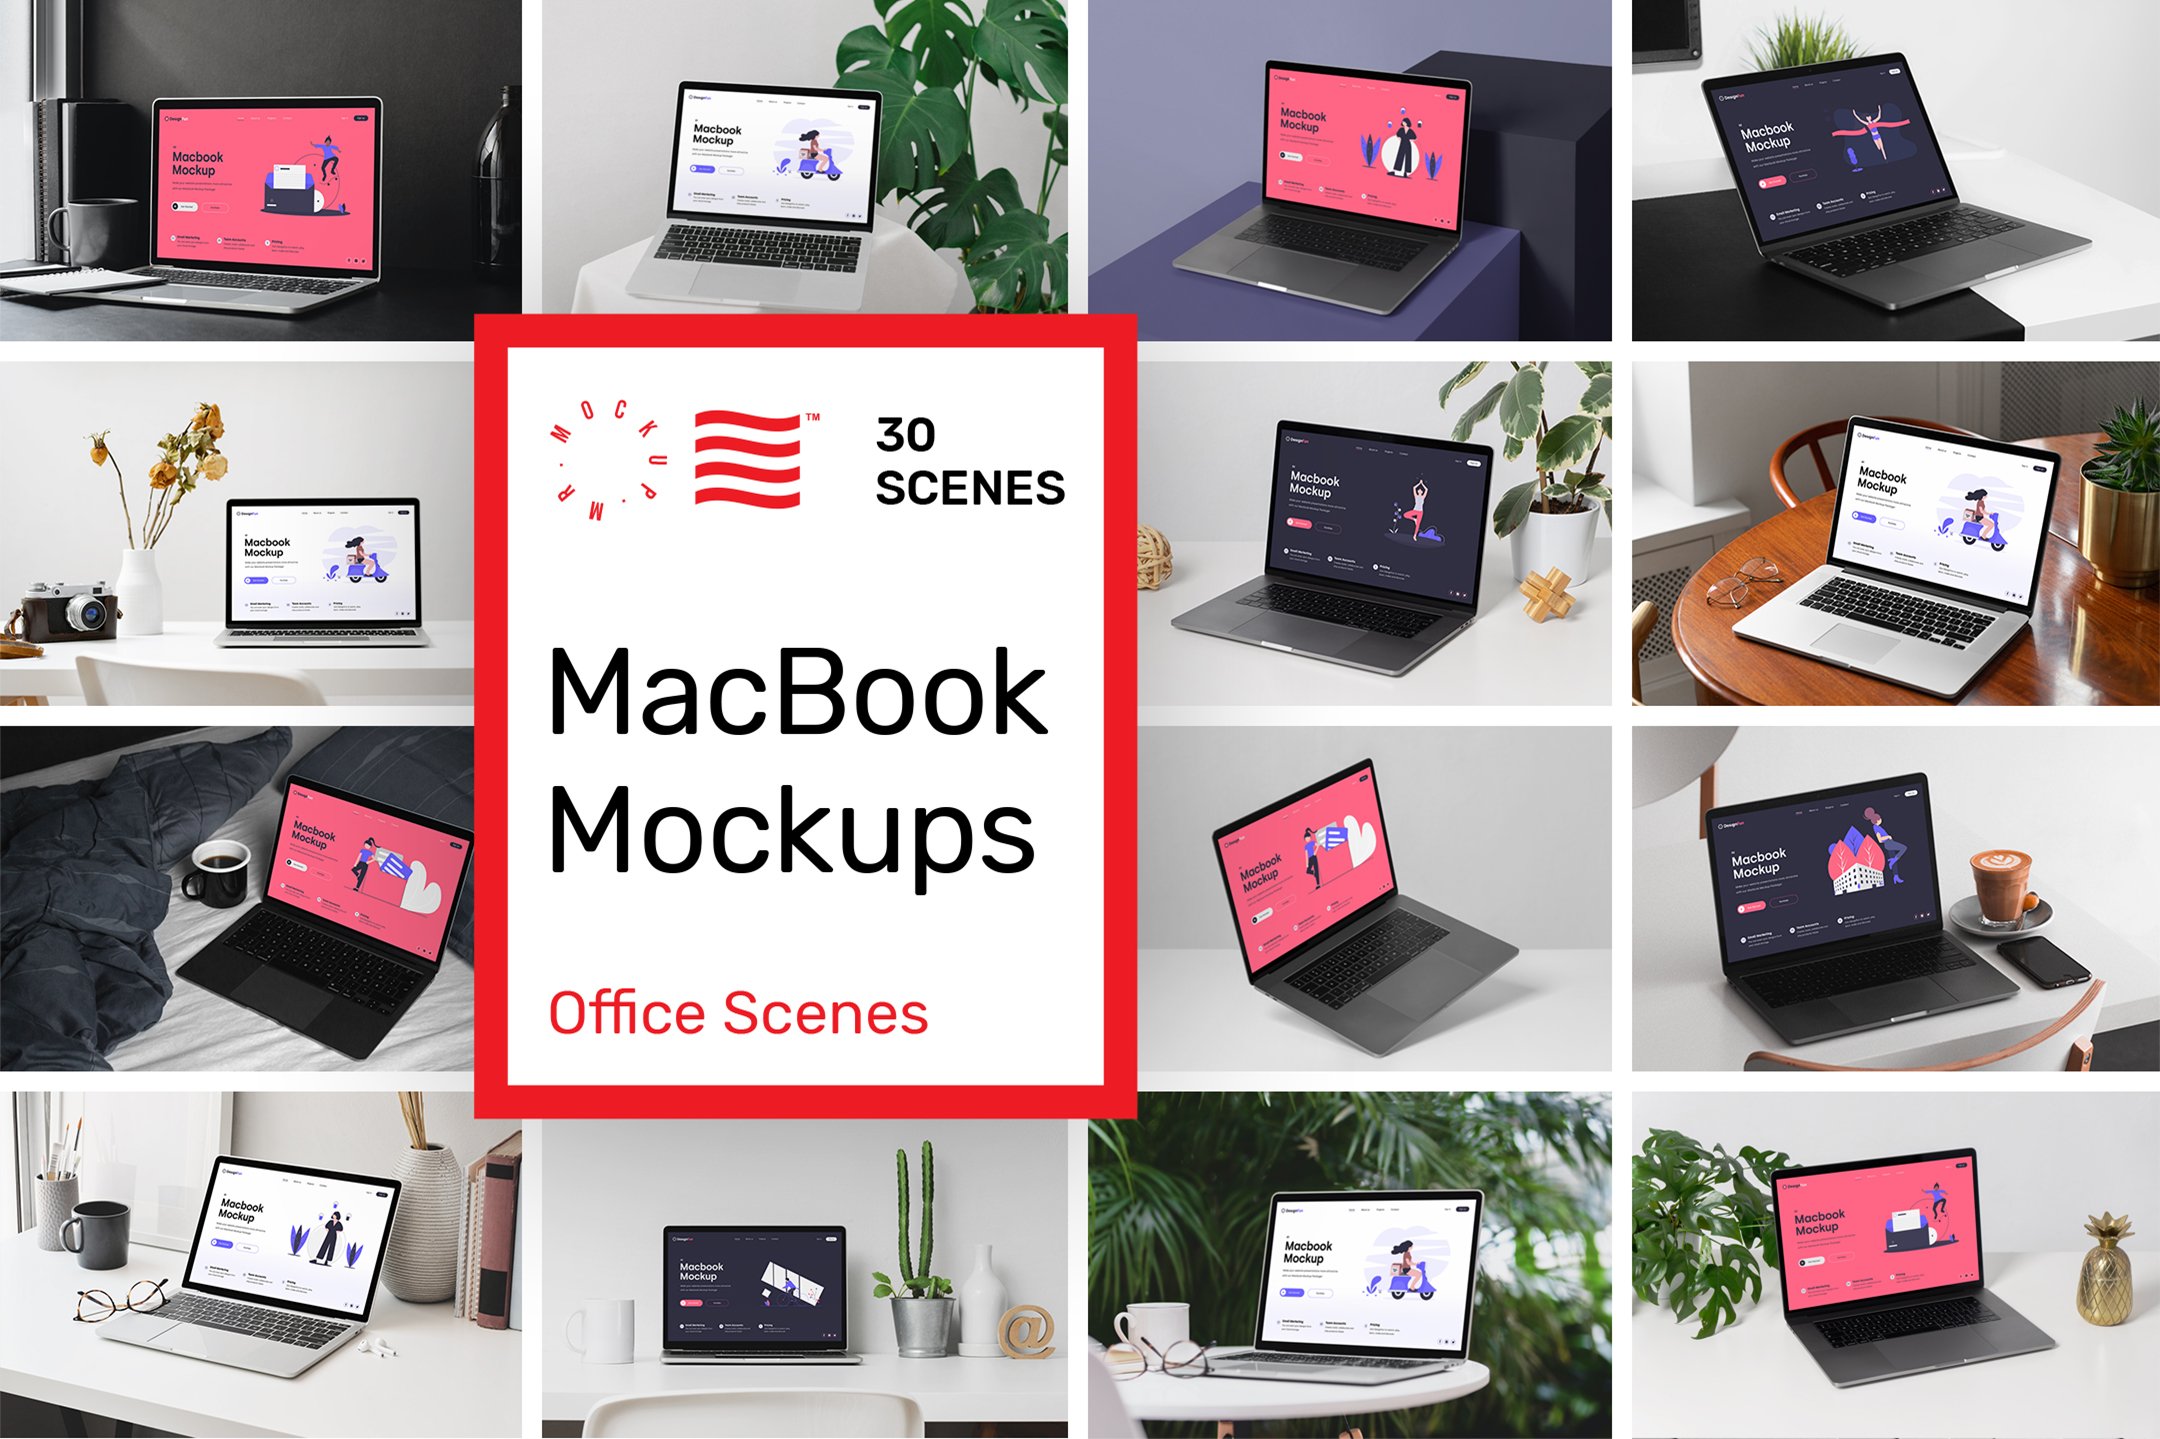 MacBook Mockups - Workspace Mockups cover image.